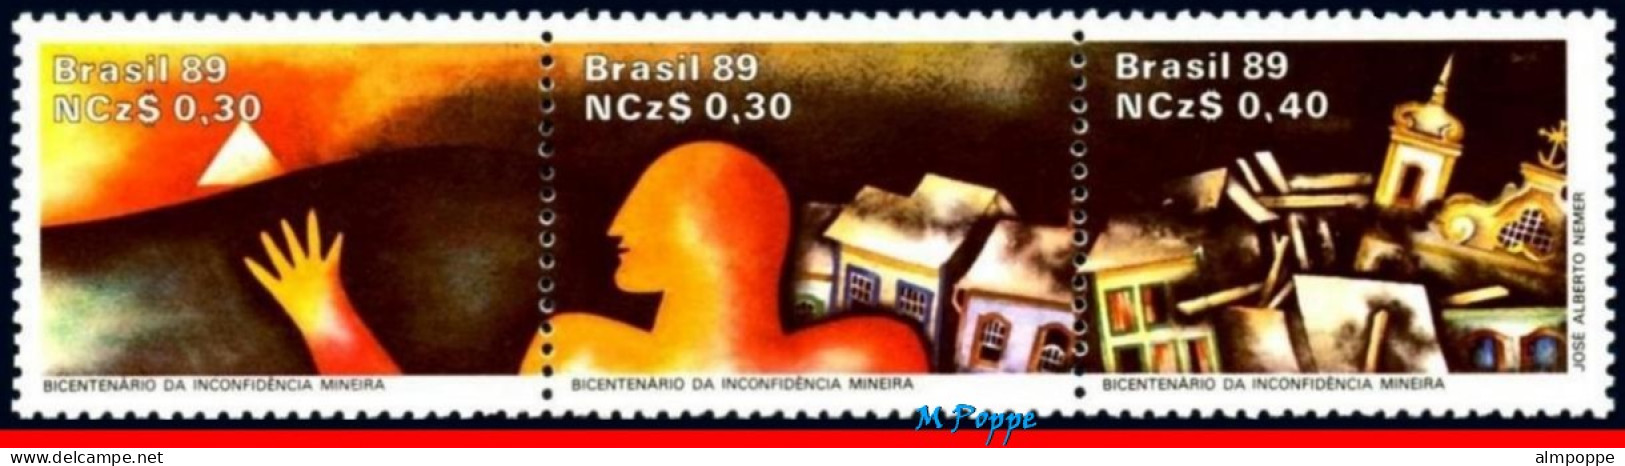 Ref. BR-2166-FO BRAZIL 1989 - INDEPENDENCE MOVEMENT,CONSPIRACY, MINAS, MI# 2295-97,SHEET MNH, HISTORY 30V Sc# 2166 - Blokken & Velletjes